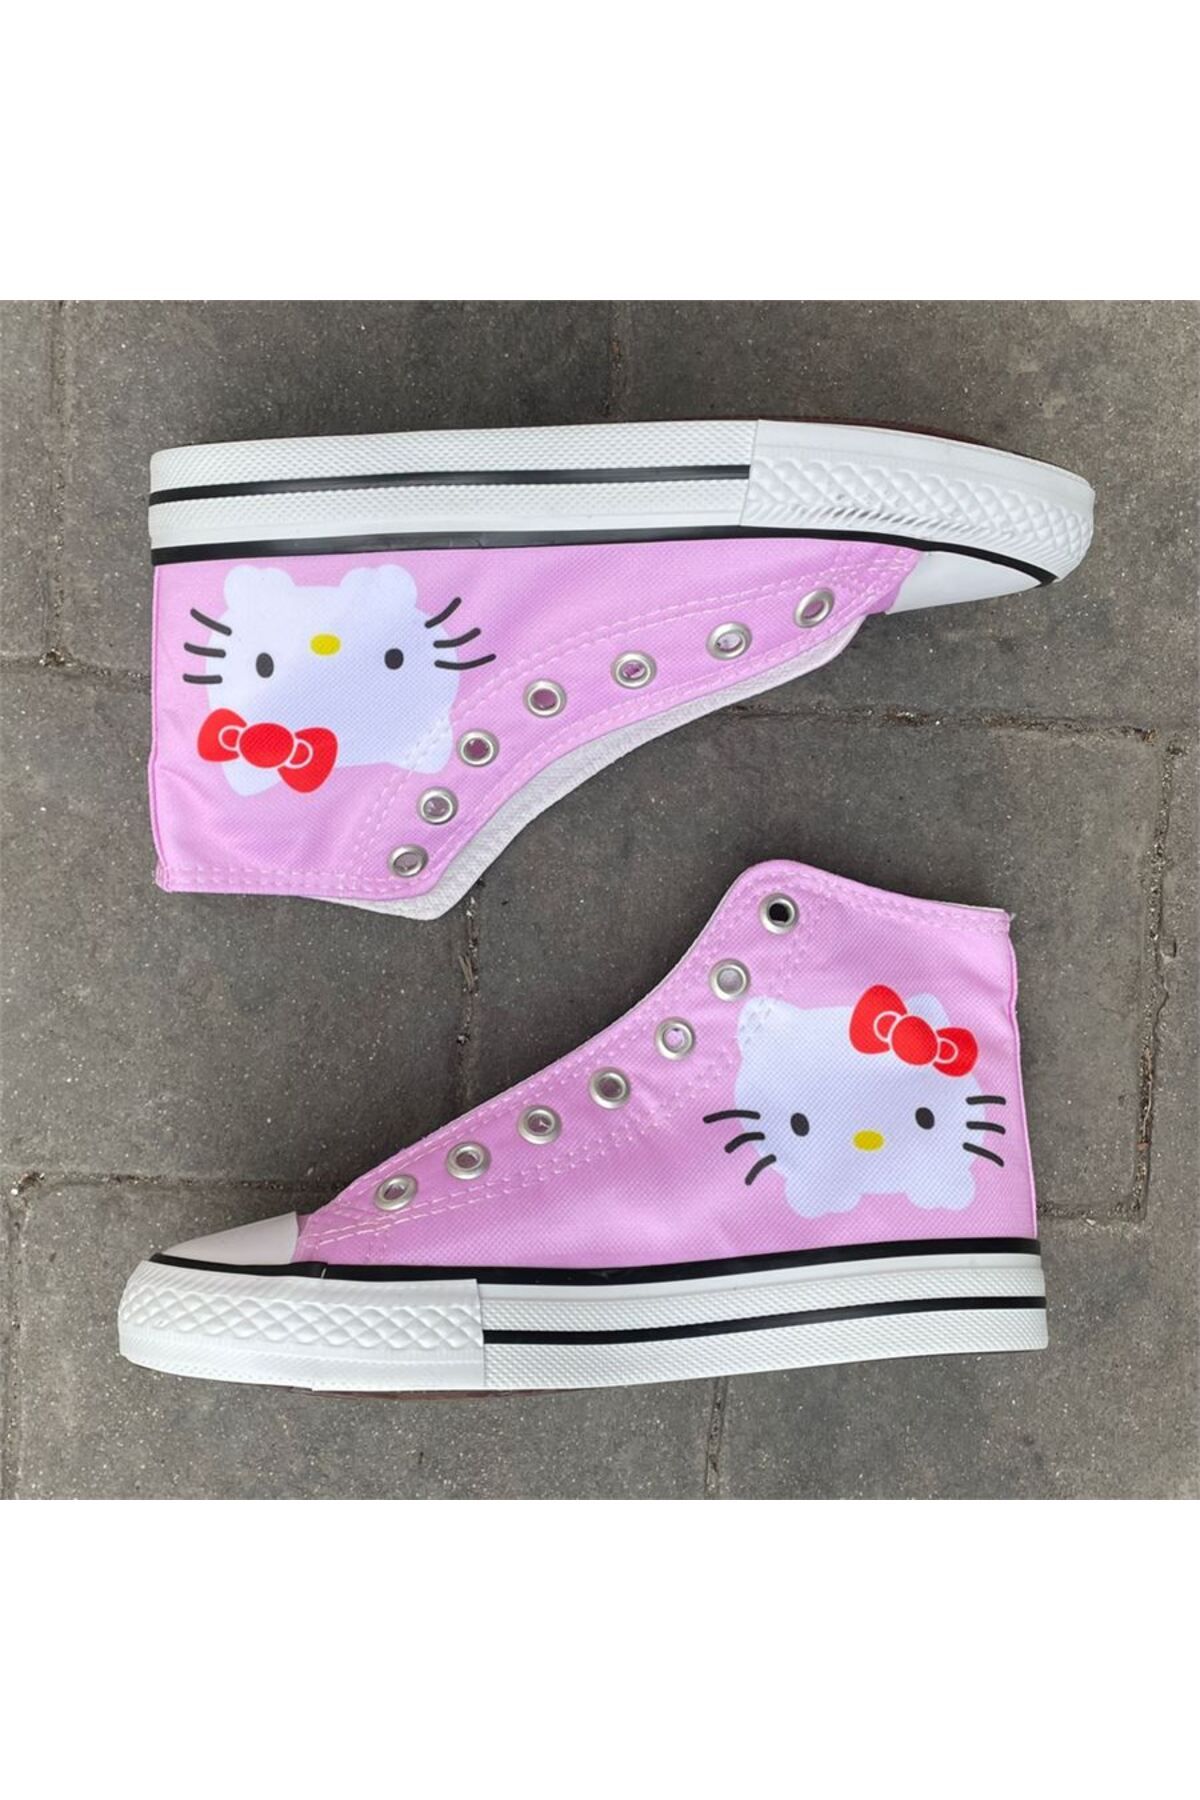 StockCase Pembe Basic Hello Kitty Uzun Kanvas Ayakkabı